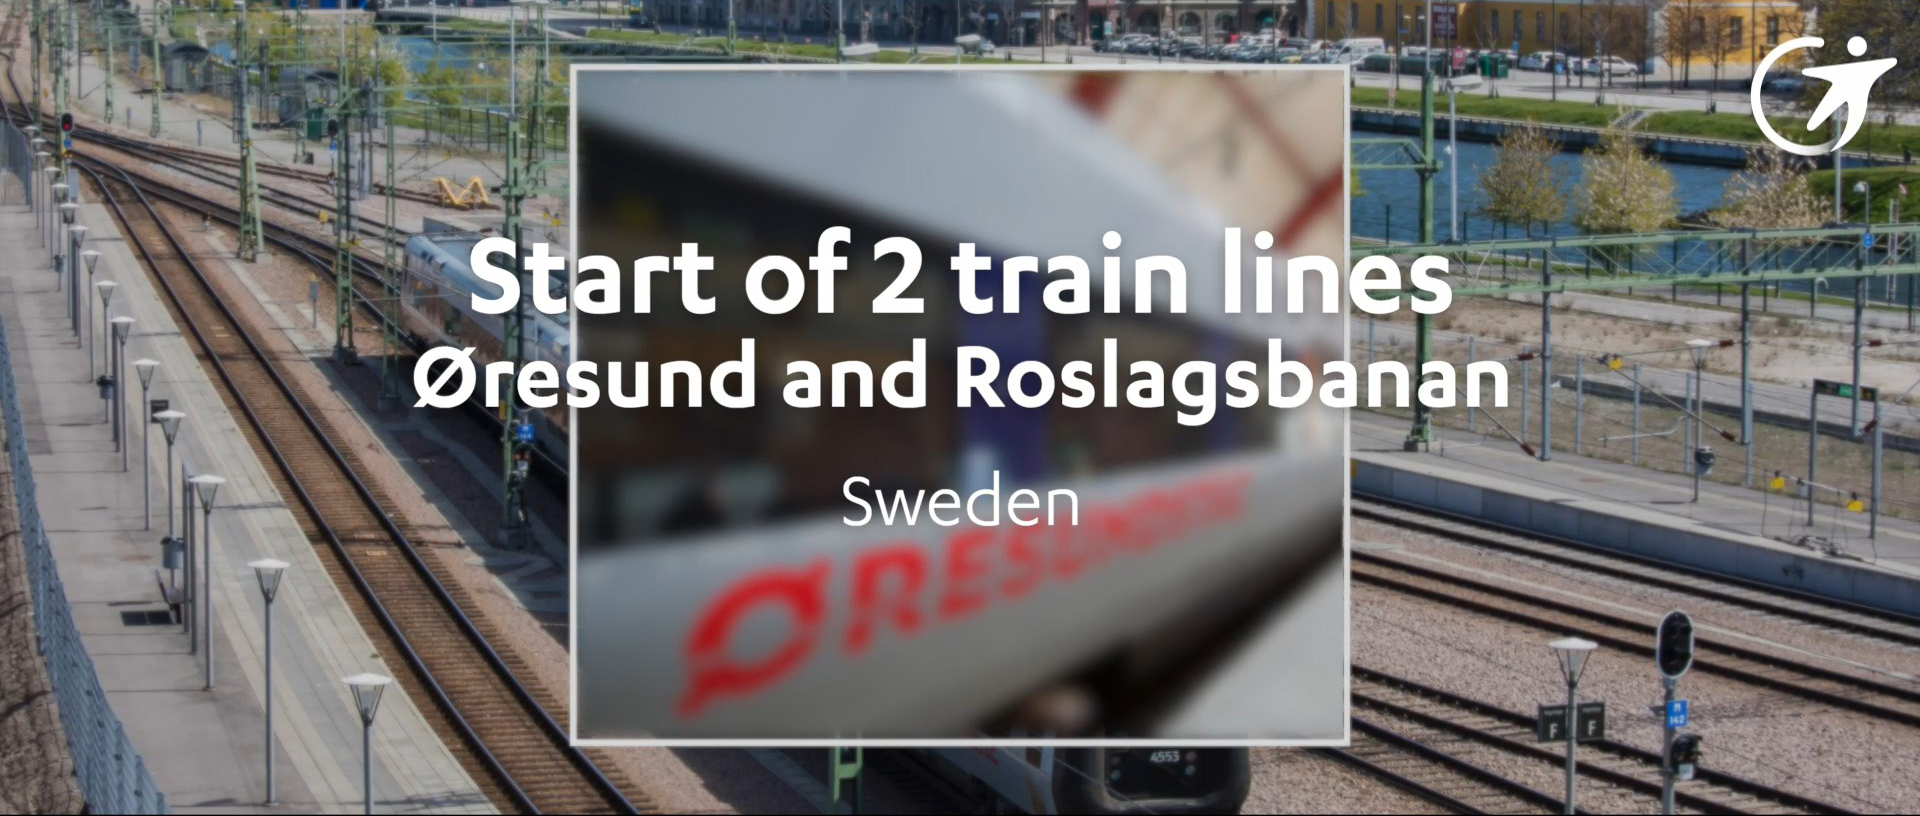 Trains Oresund Roslagsbanan